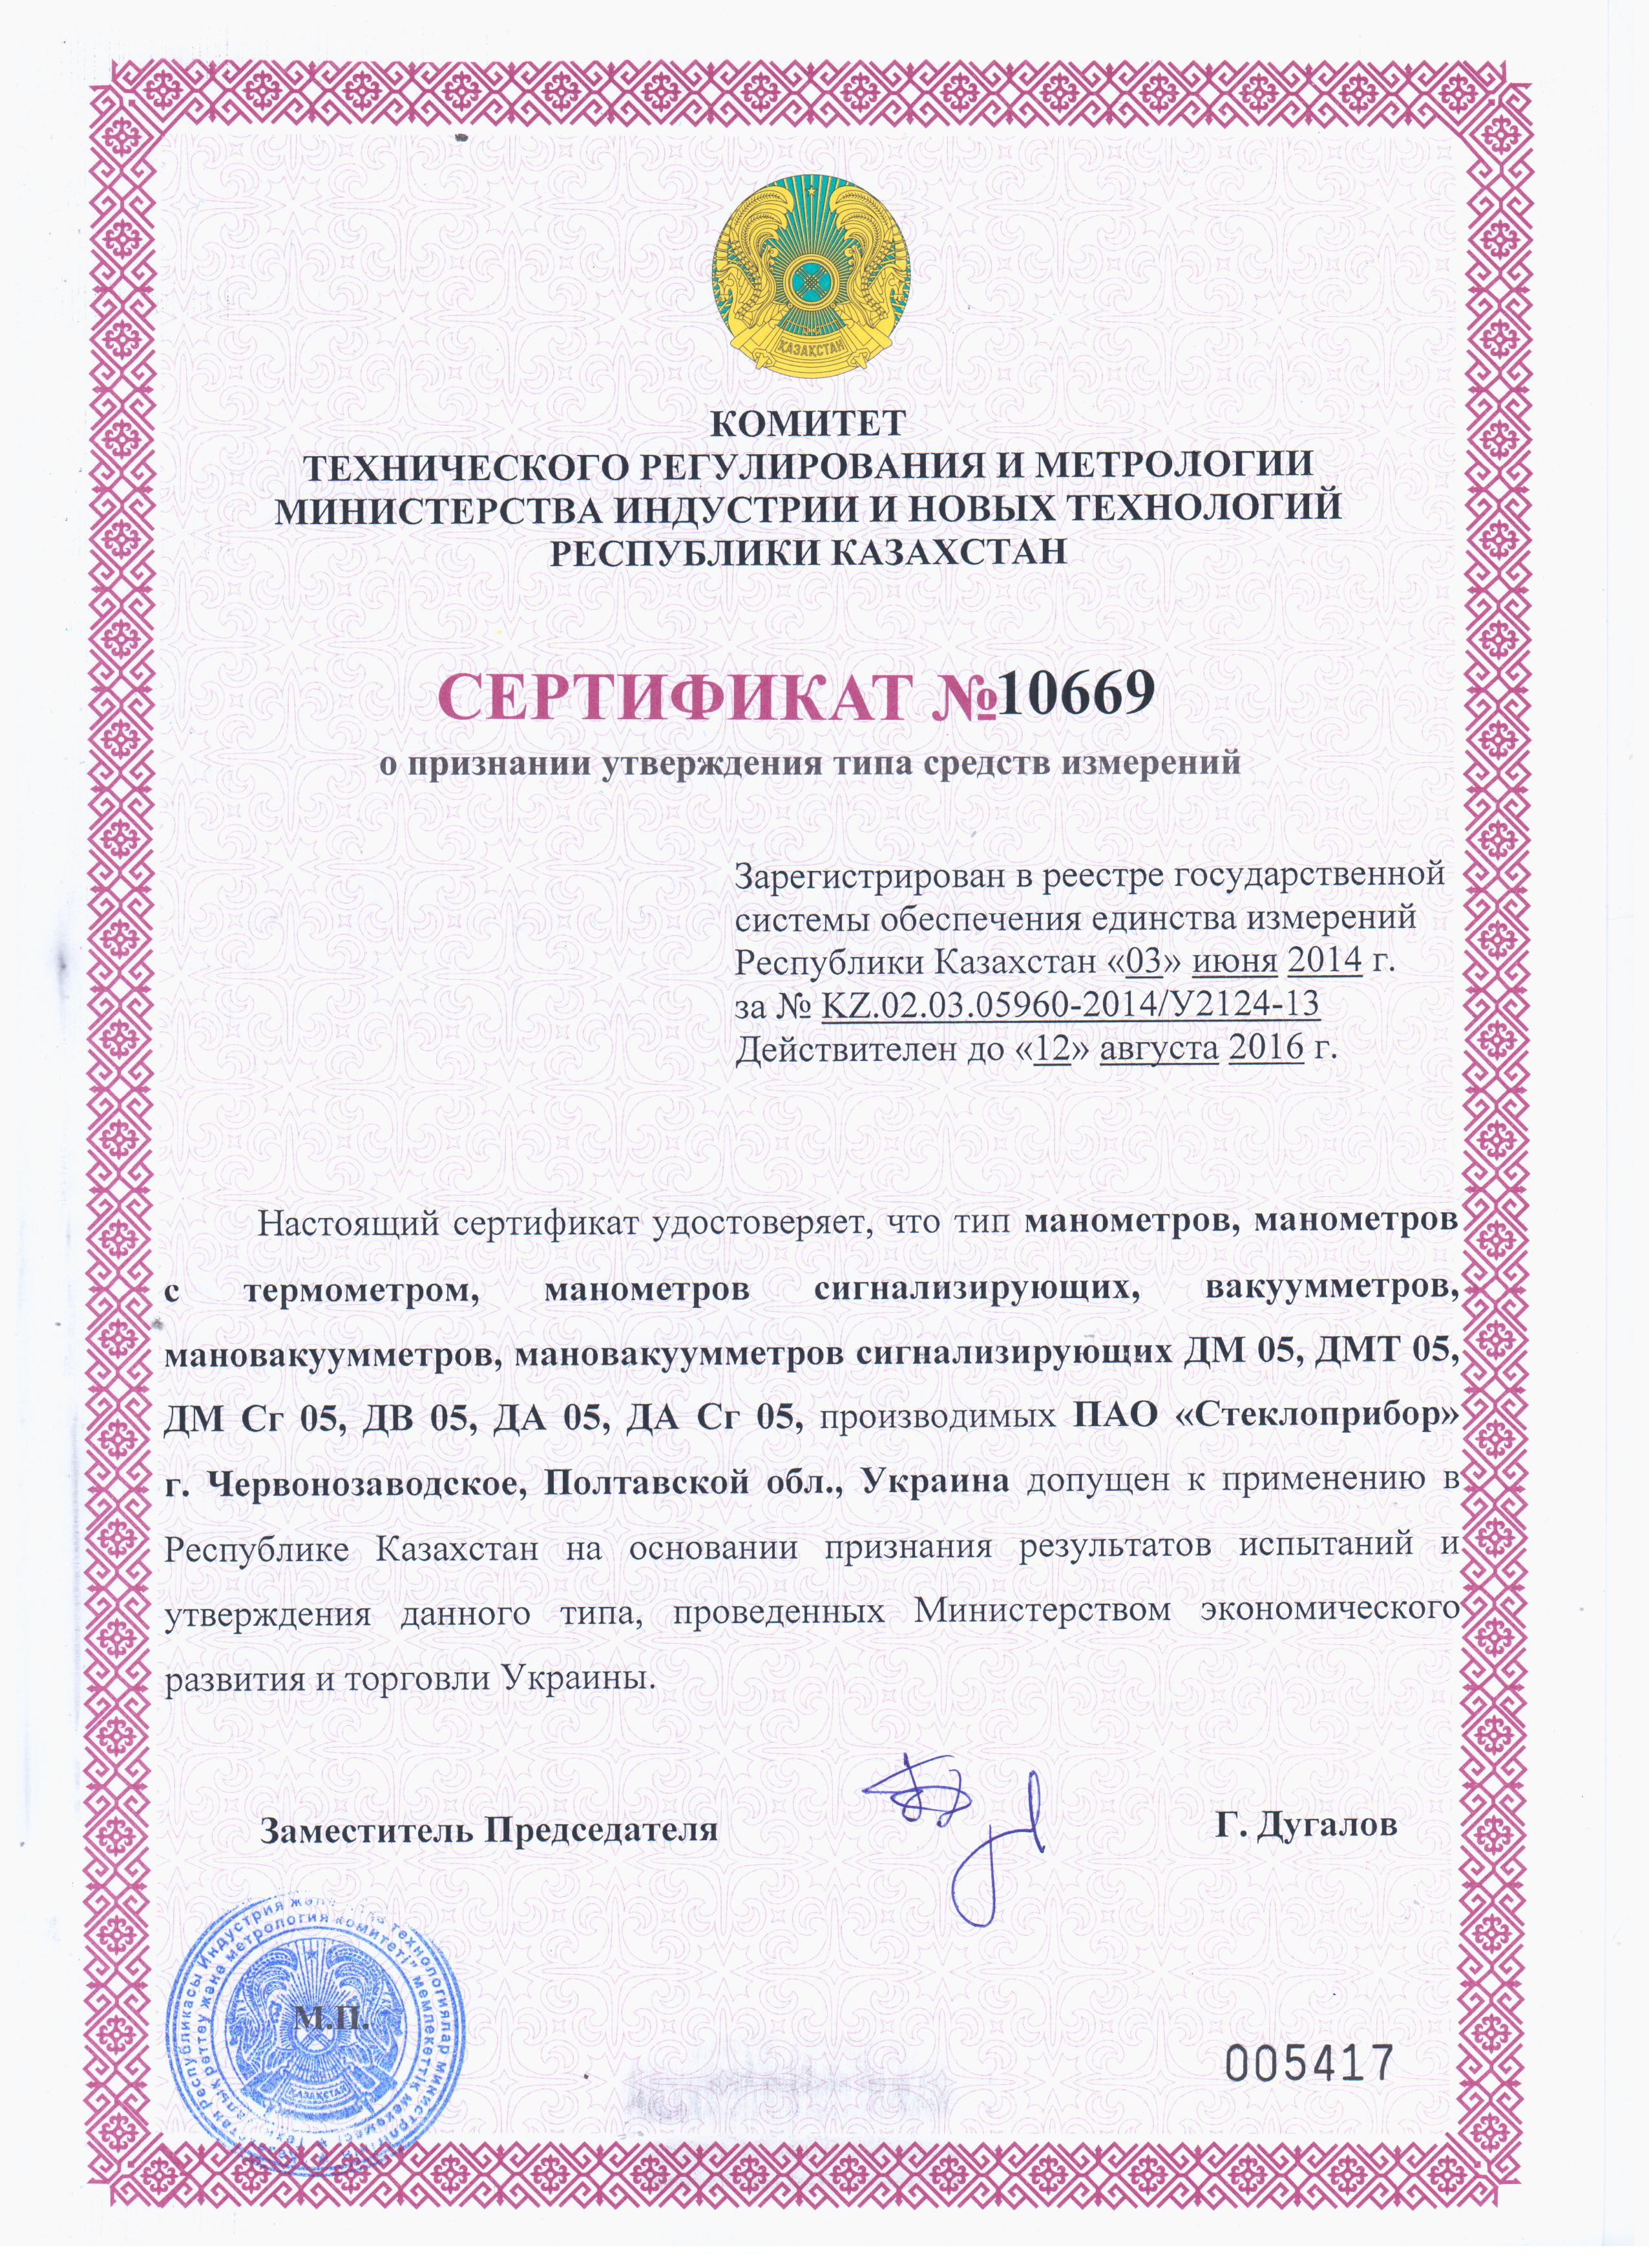 Сертификат на манометры